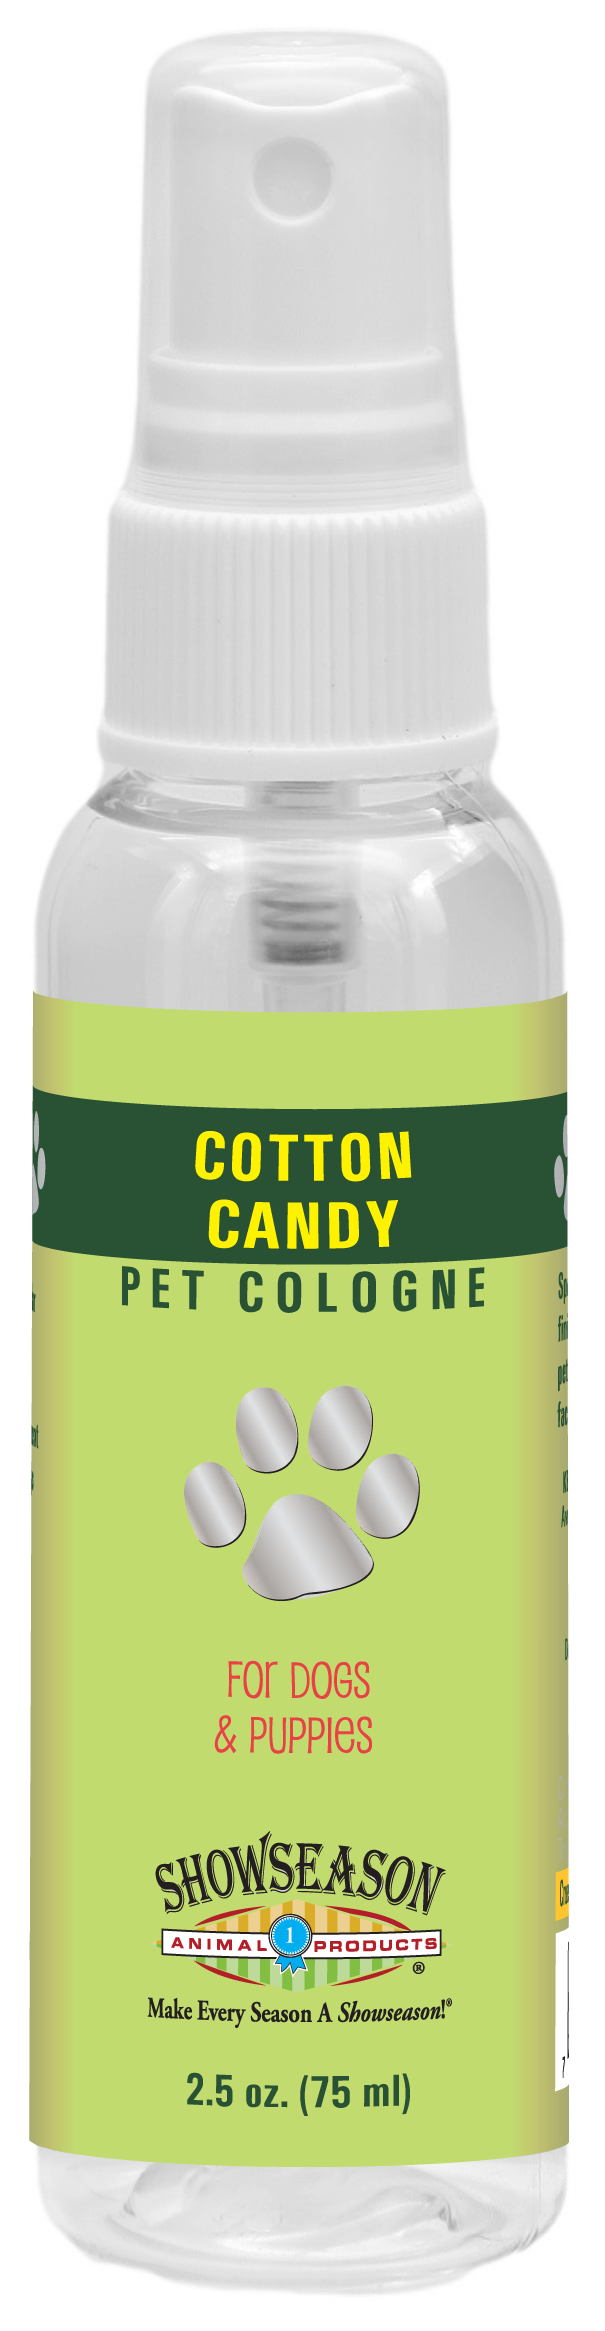 Cotton Candy Pet Cologne